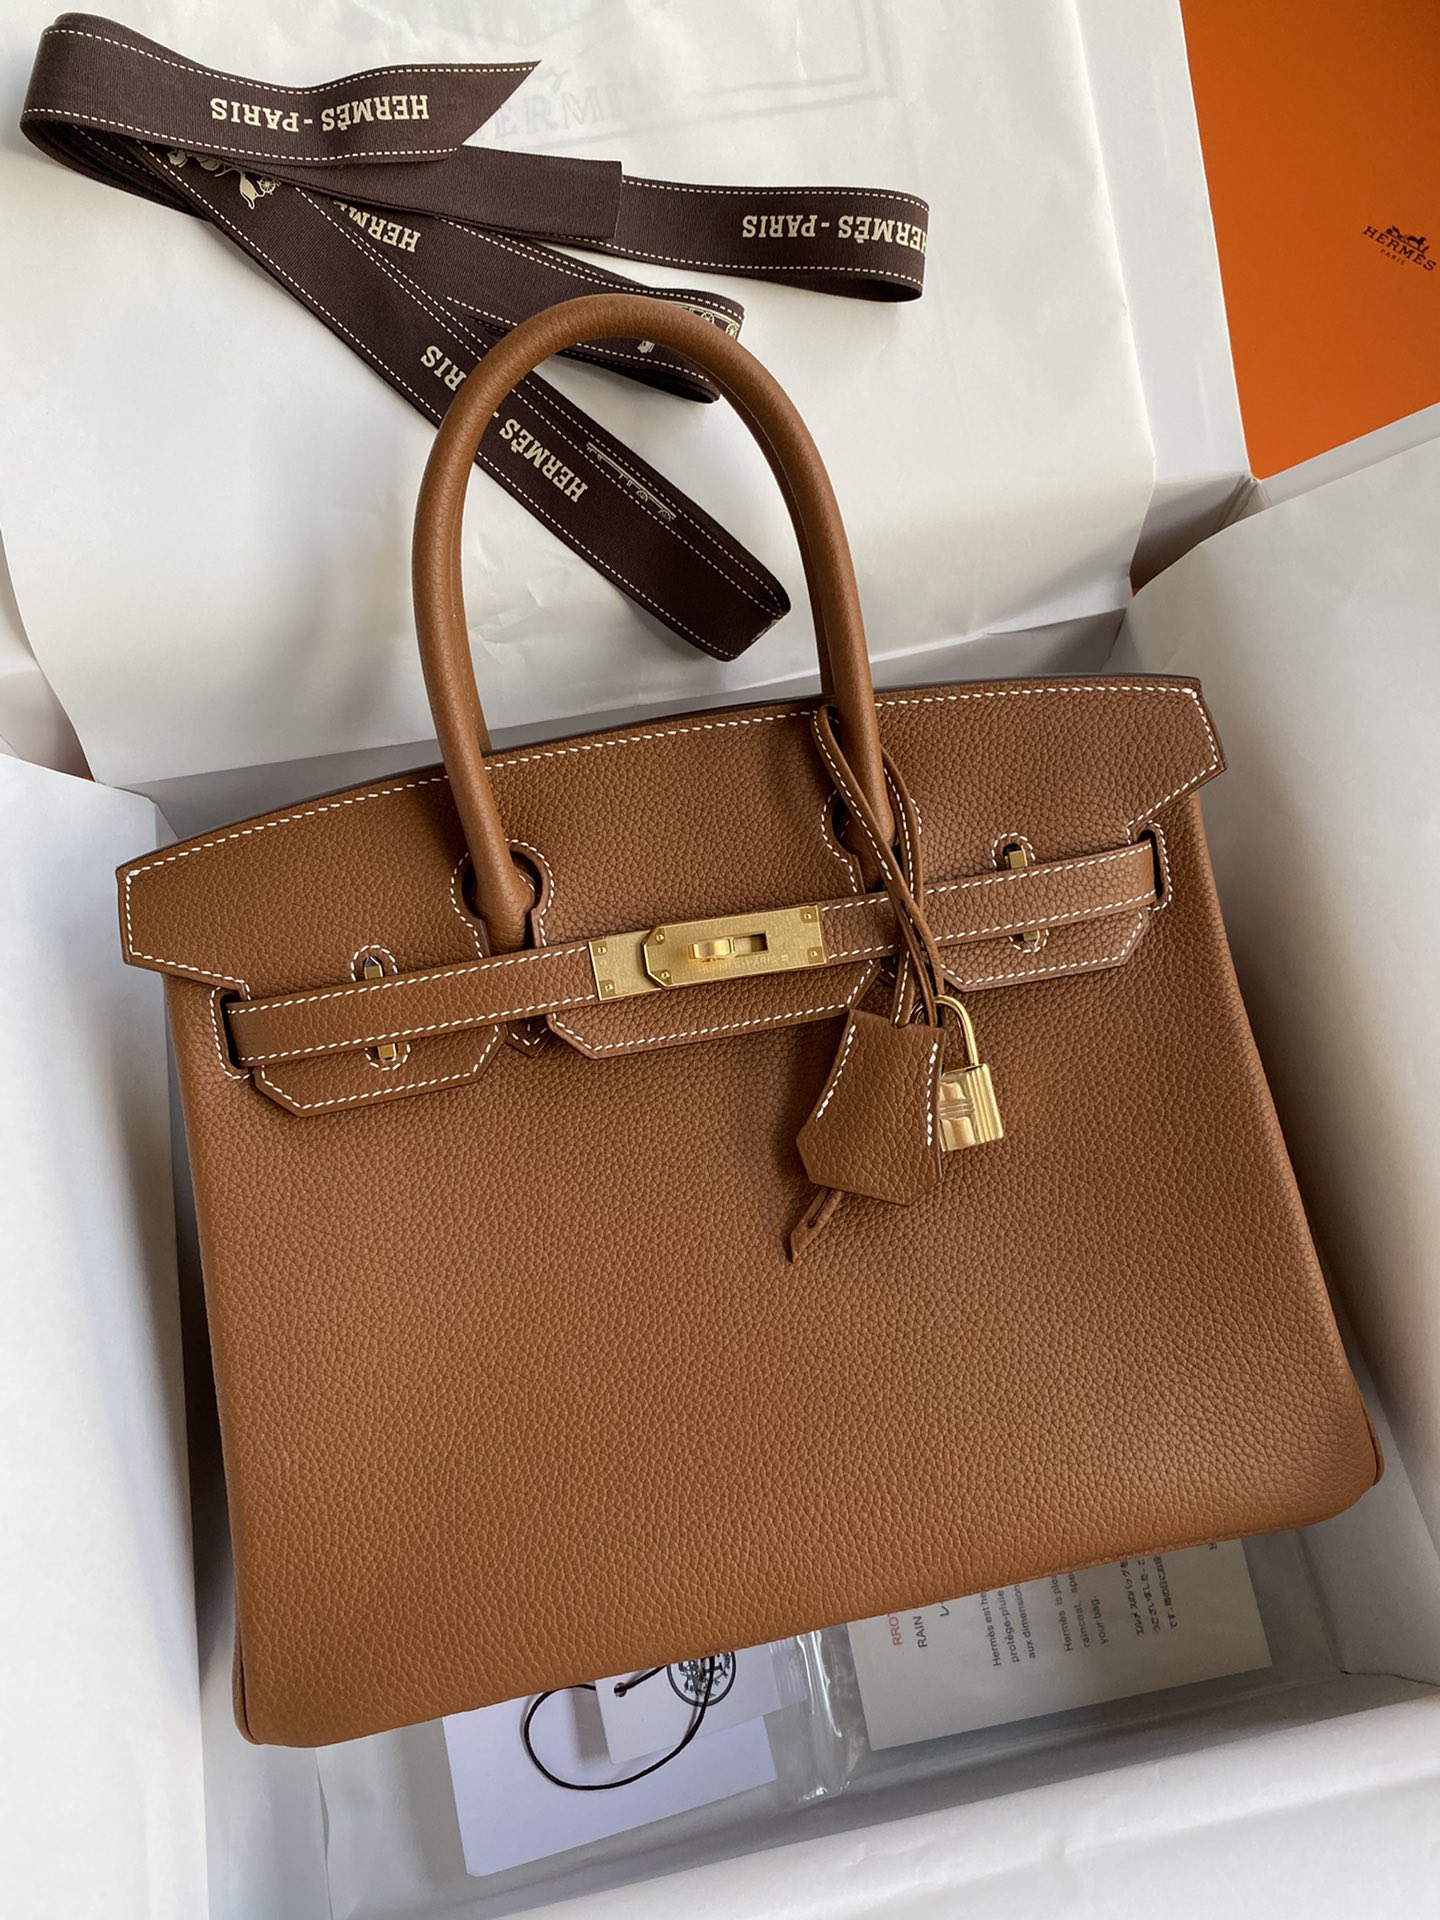 Hermes Birkin Bags Handbags Brown Coffee Color Sewing Silver Hardware Calfskin Cowhide